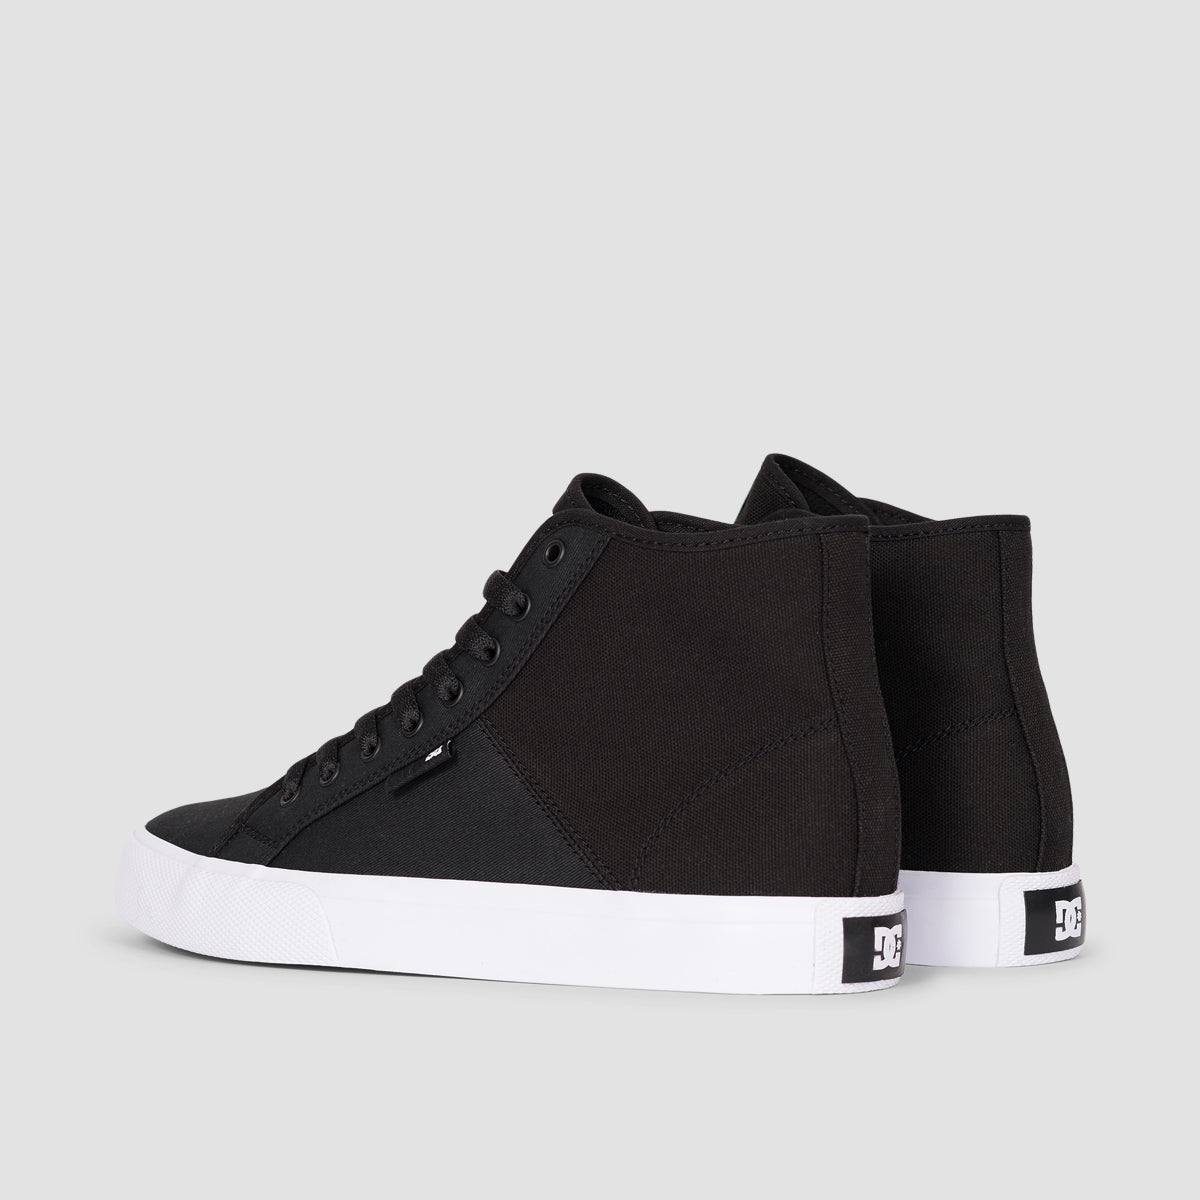 DC Manual Hi TXSE Shoes - Black/White